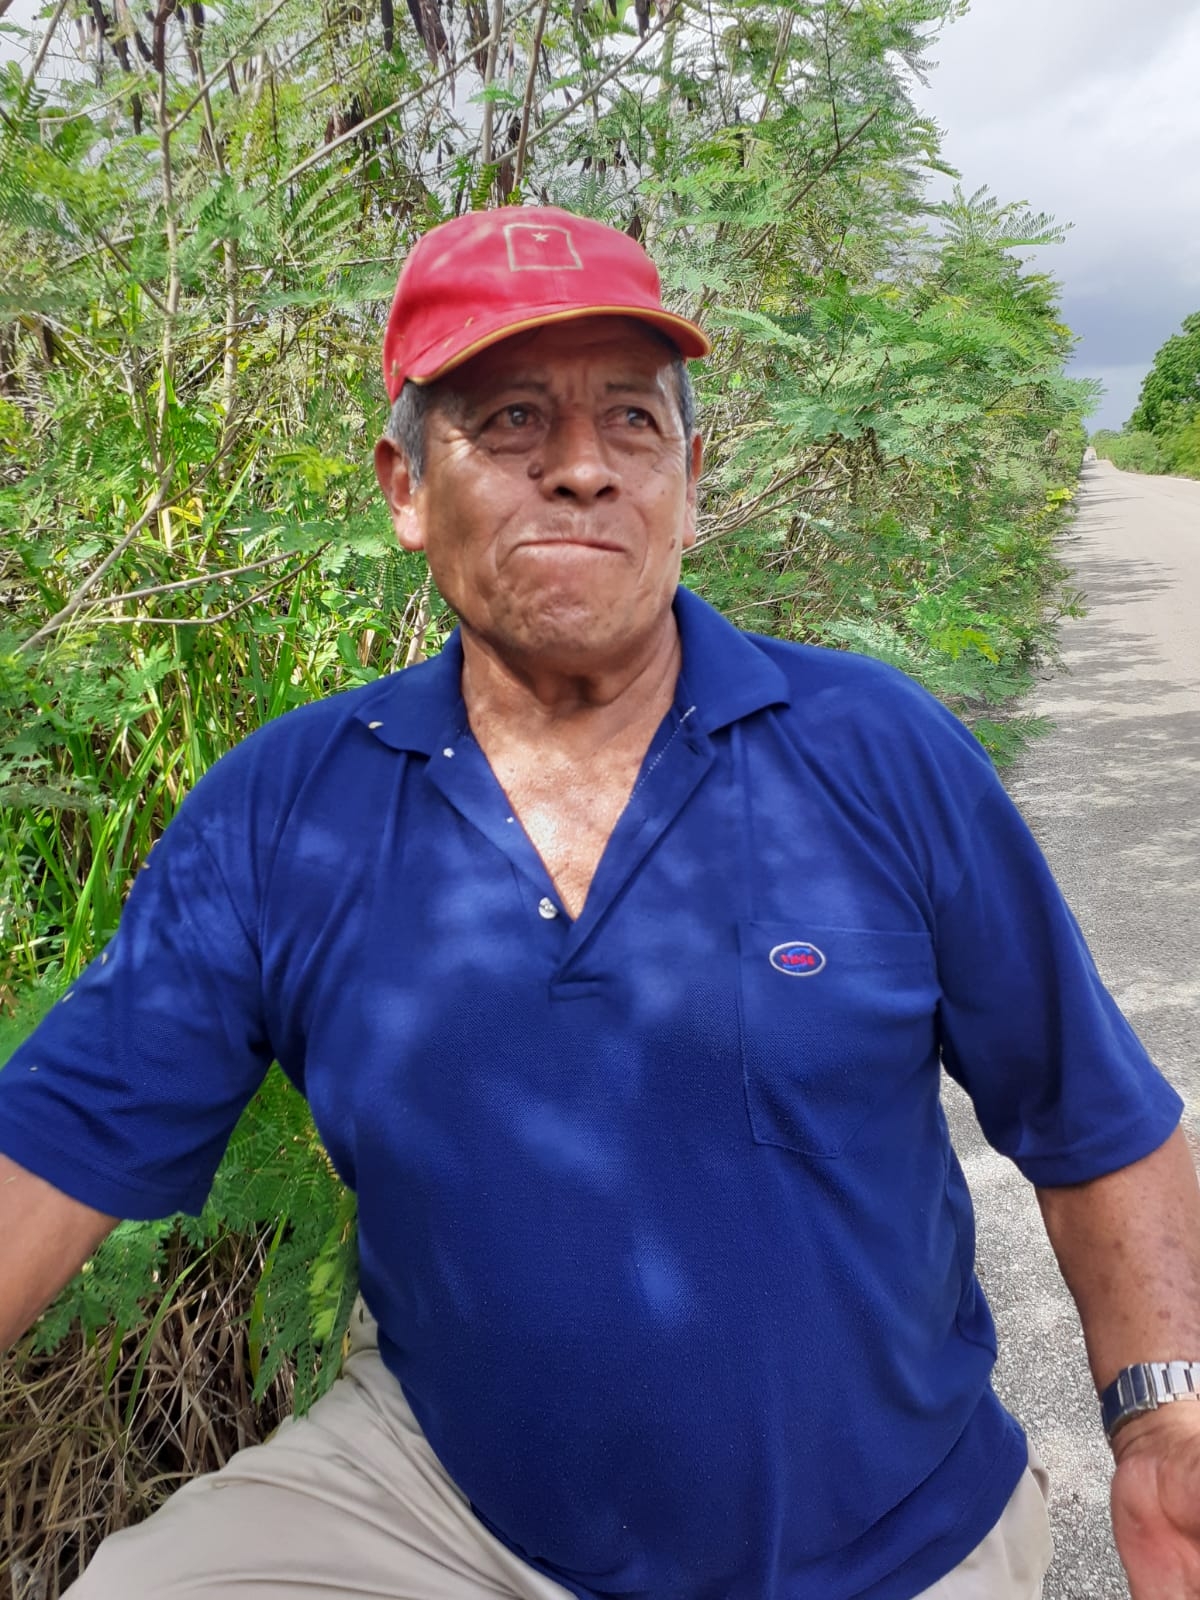 Don Buenaventura arriesga su vida para obtener ingresos en José María Morelos